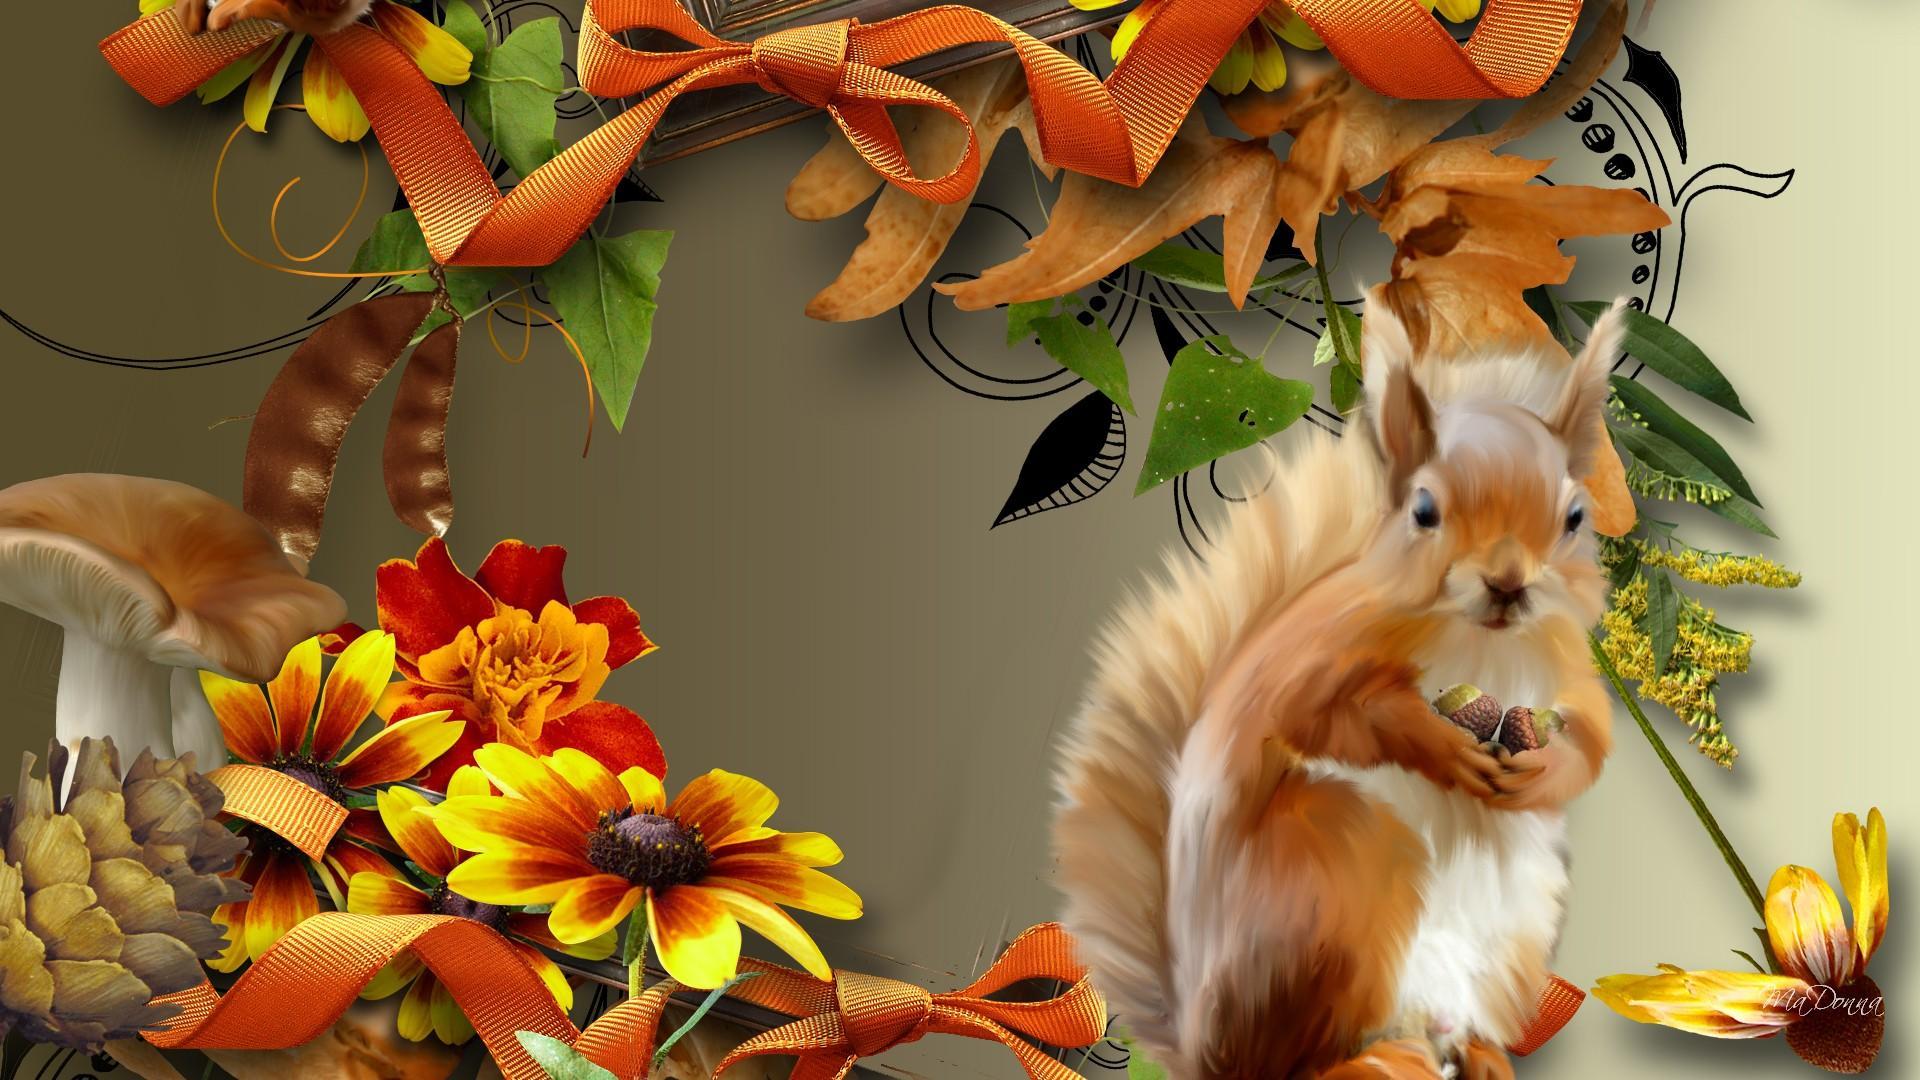 Autumn Squirrel HD desktop wallpaper, Widescreen, High Definition